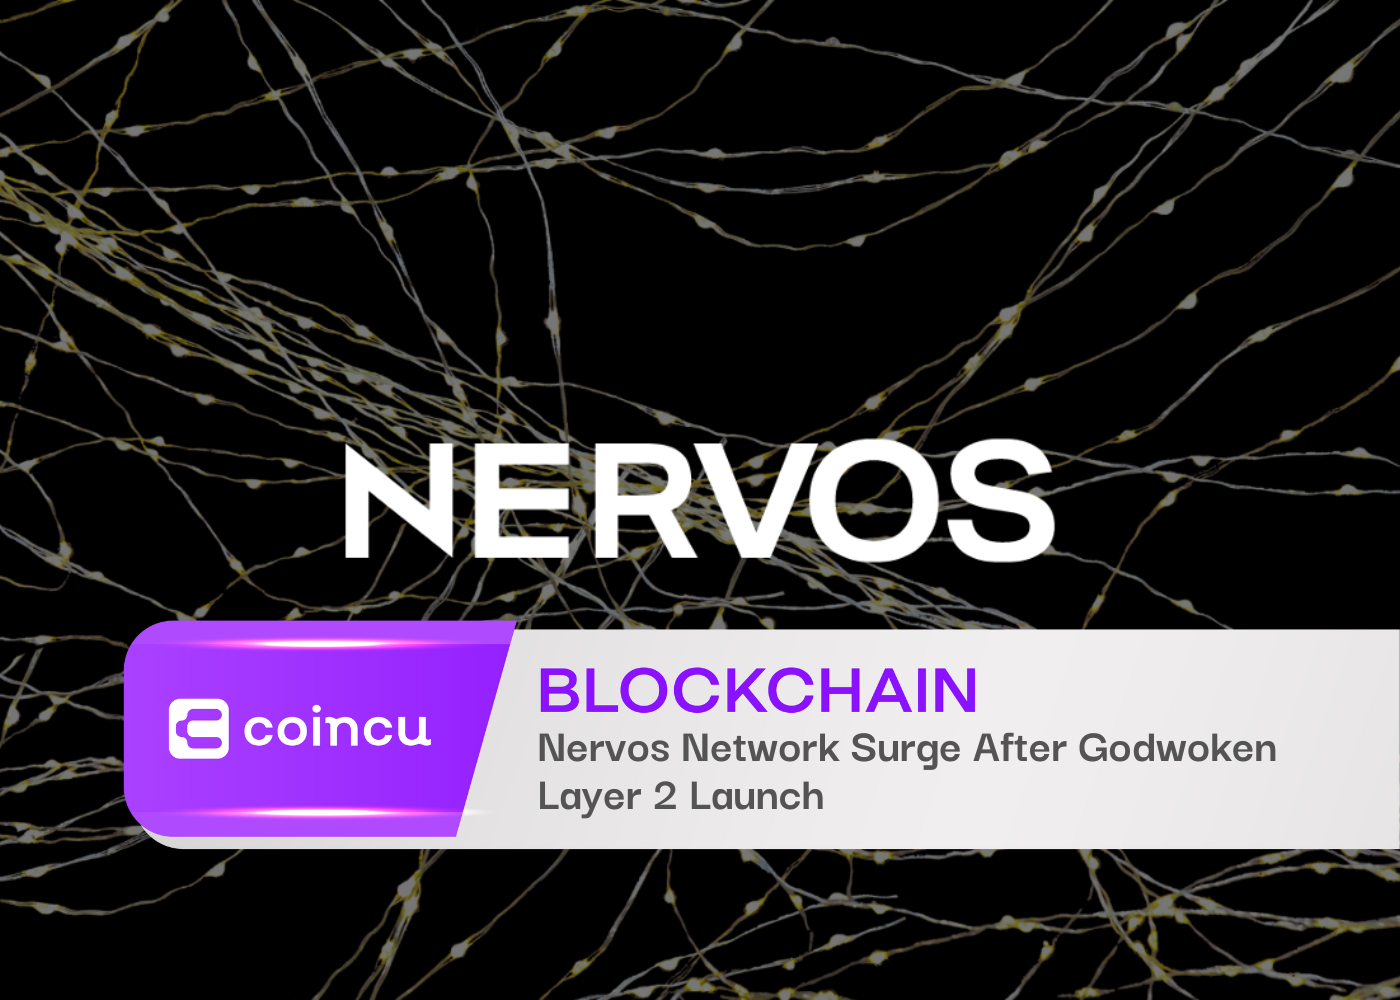 Nervos Network Surge After Godwoken Layer 2 Launch